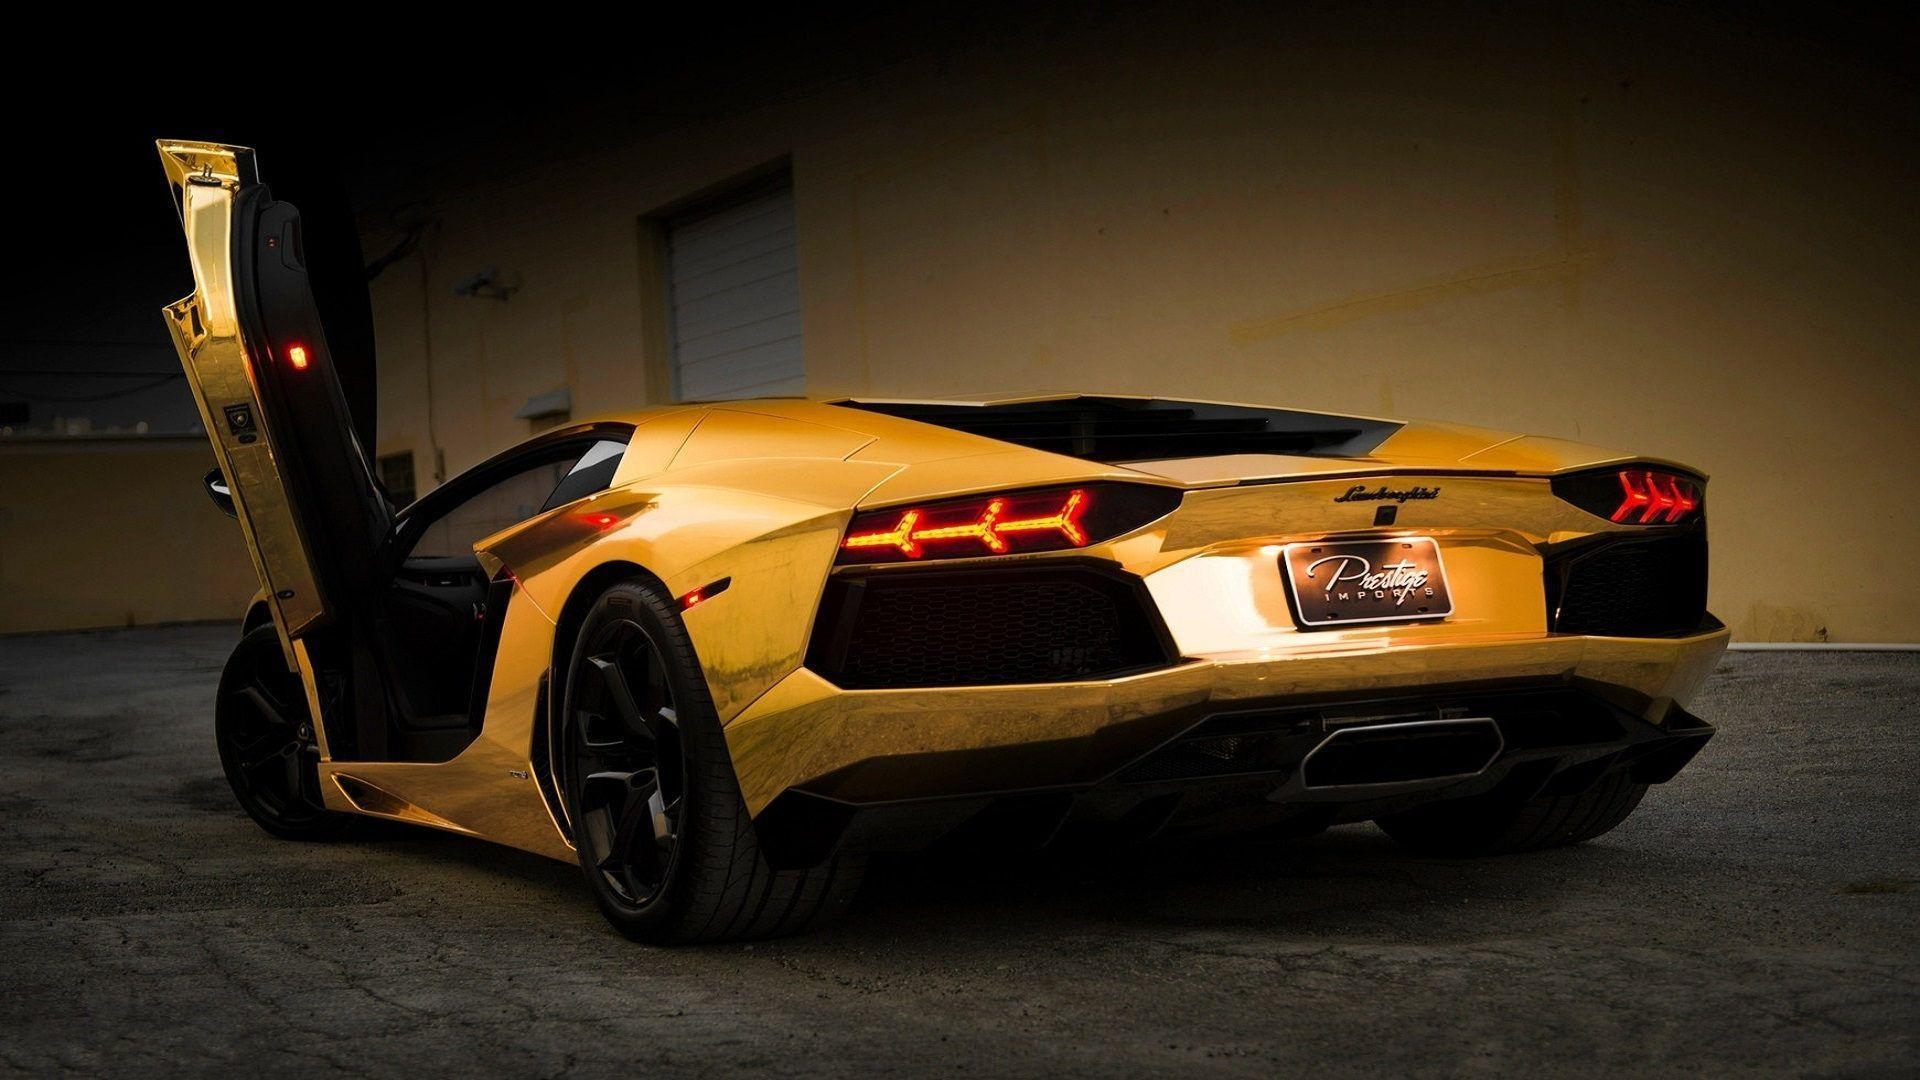 Lamborghini Electric Car: New Lamborghini Aventador Gold Cars Full